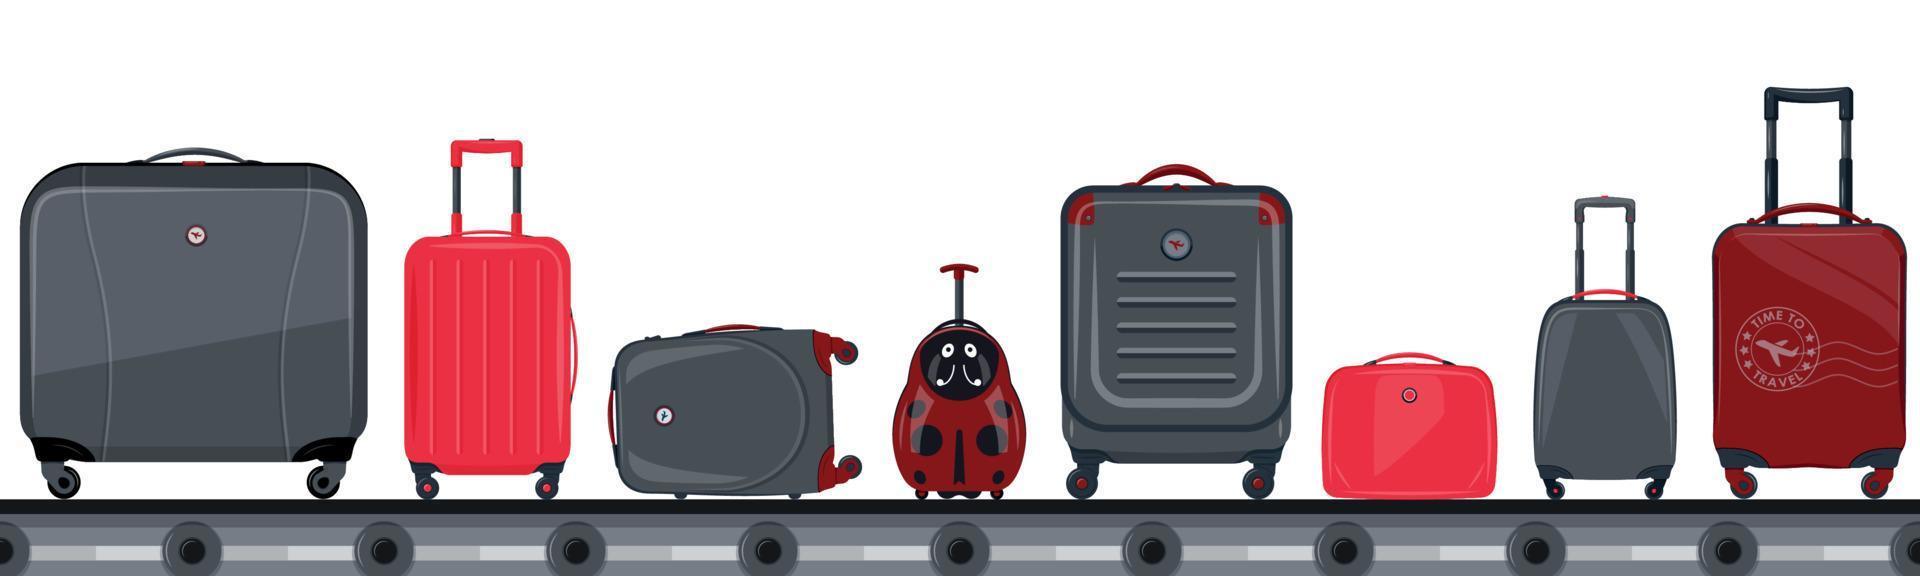 Flughafen-Förderband mit Passagiergepäck vektor